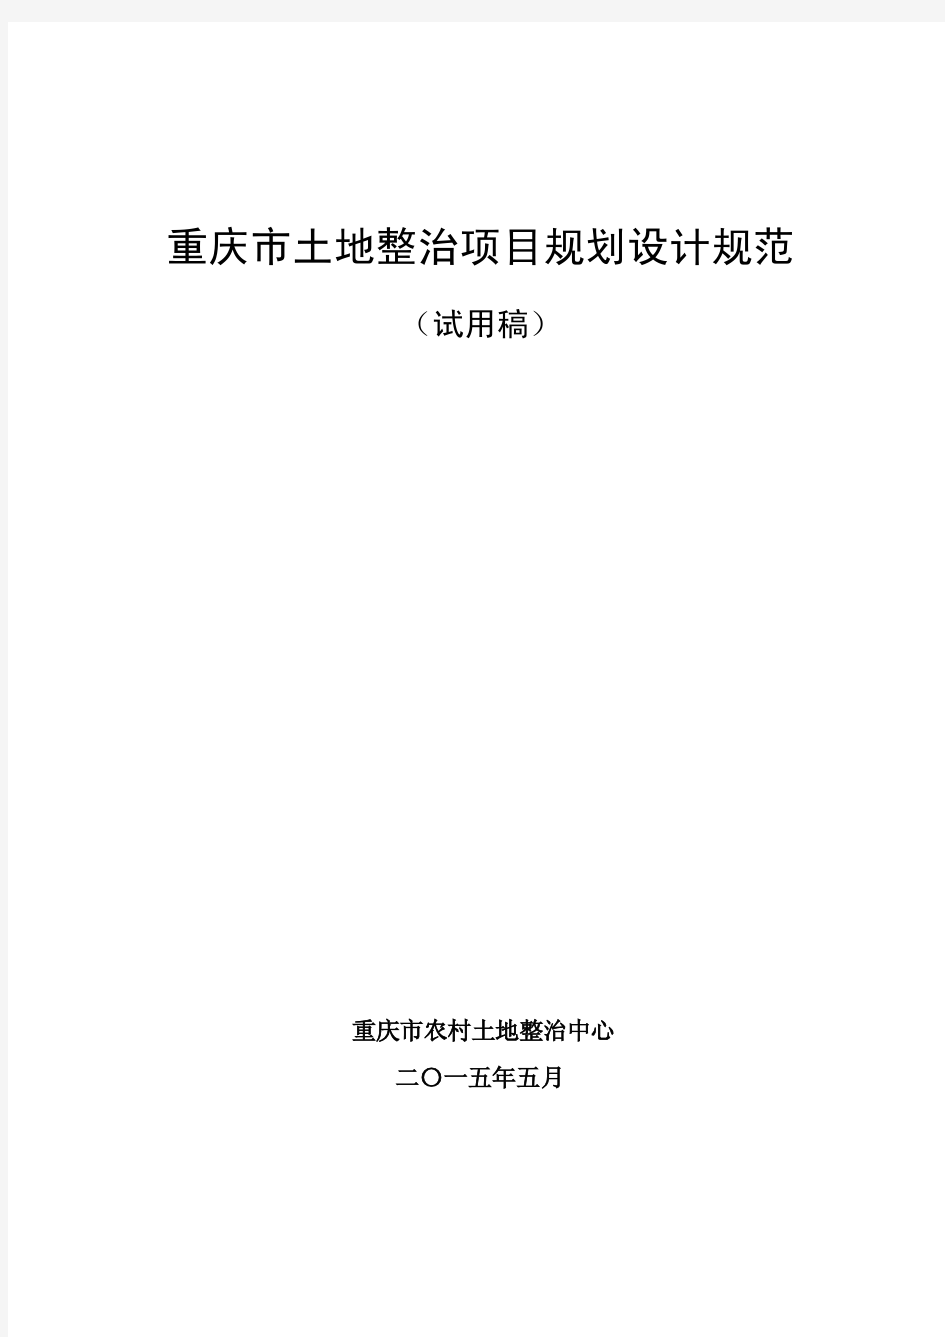 重庆市土地整治项目规划设计规范(试用稿)